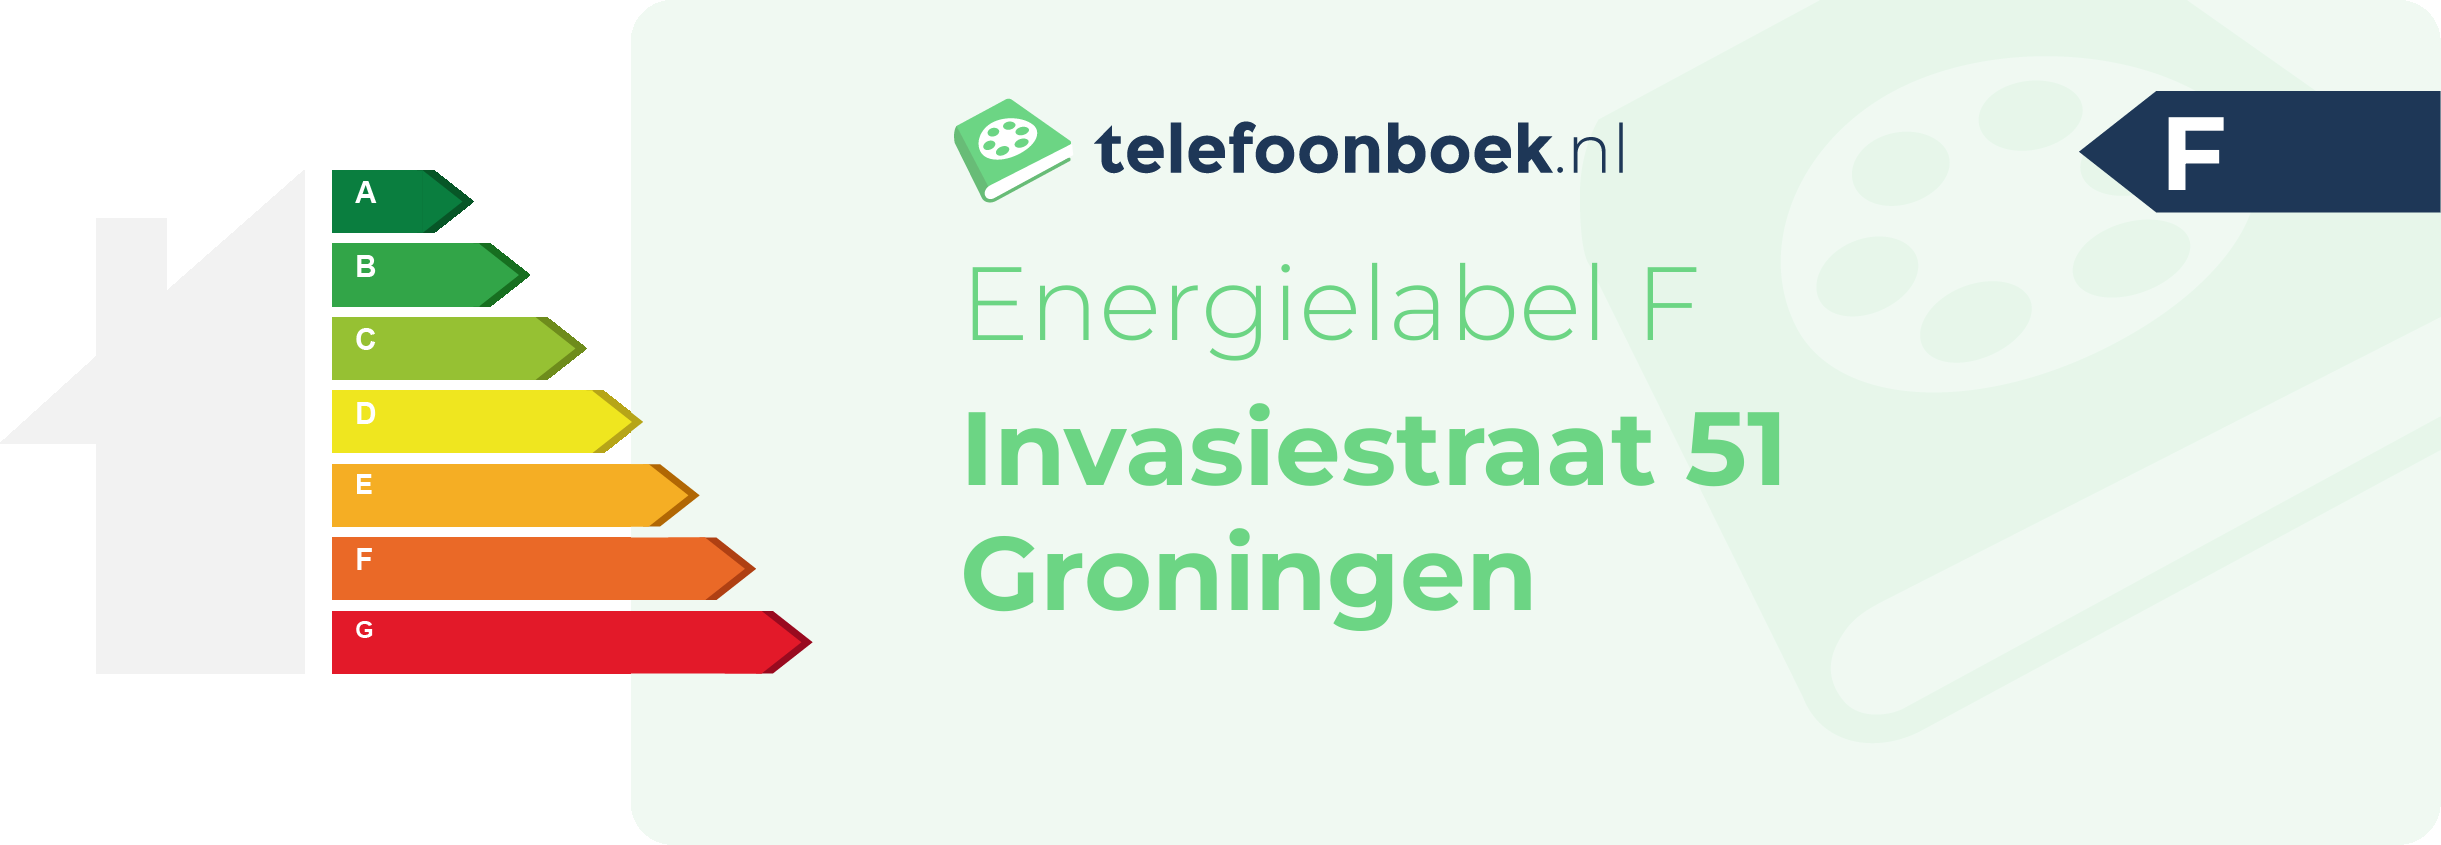 Energielabel Invasiestraat 51 Groningen